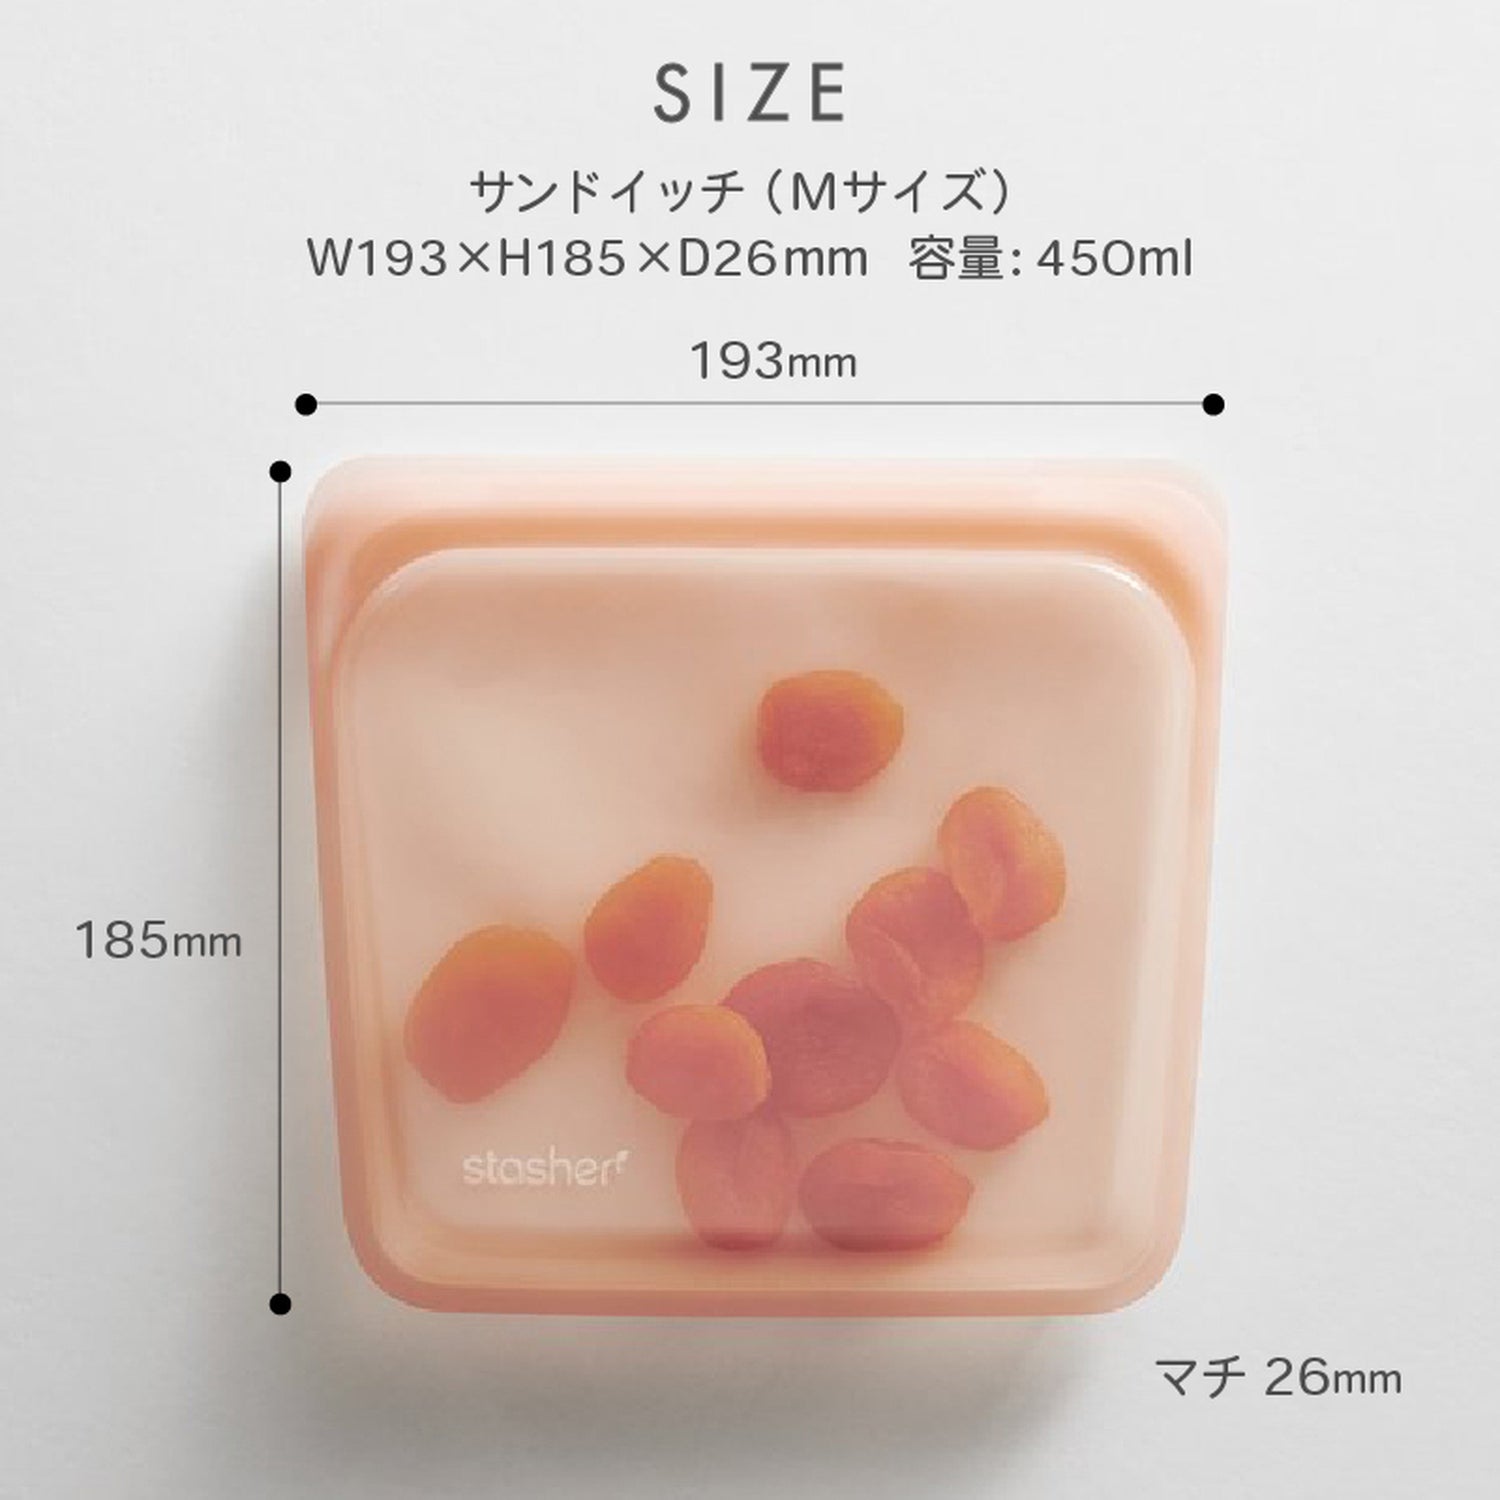 【2個セット】スタッシャー シリコンバッグ stasher 日本正規品 サンドイッチ Mサイズ 30色